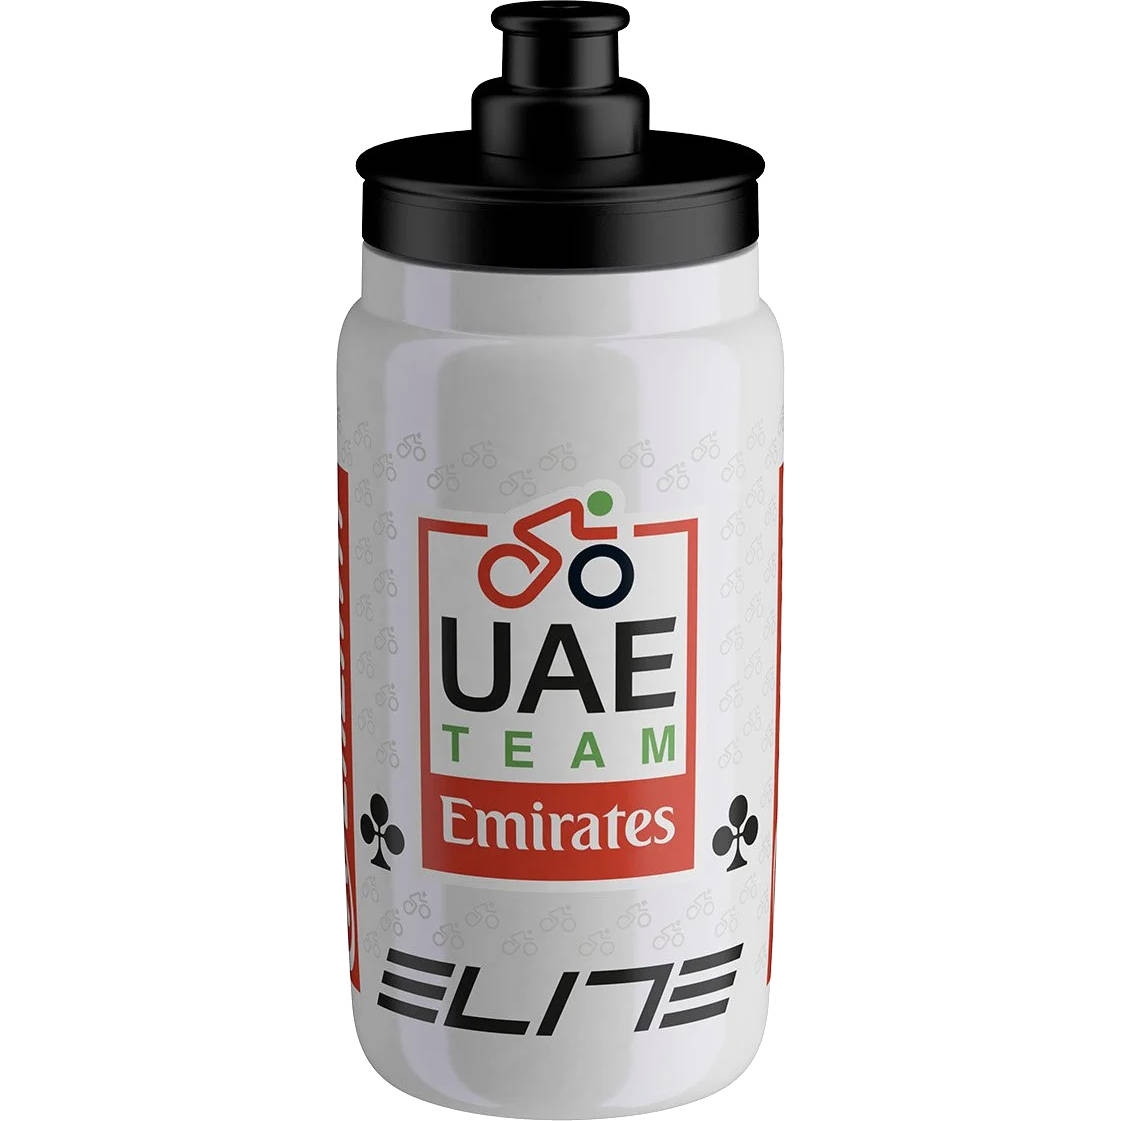 Productfoto van Elite Fly Teams Sport-Waterfles 2024 - 550ml - Uae Team Emirates